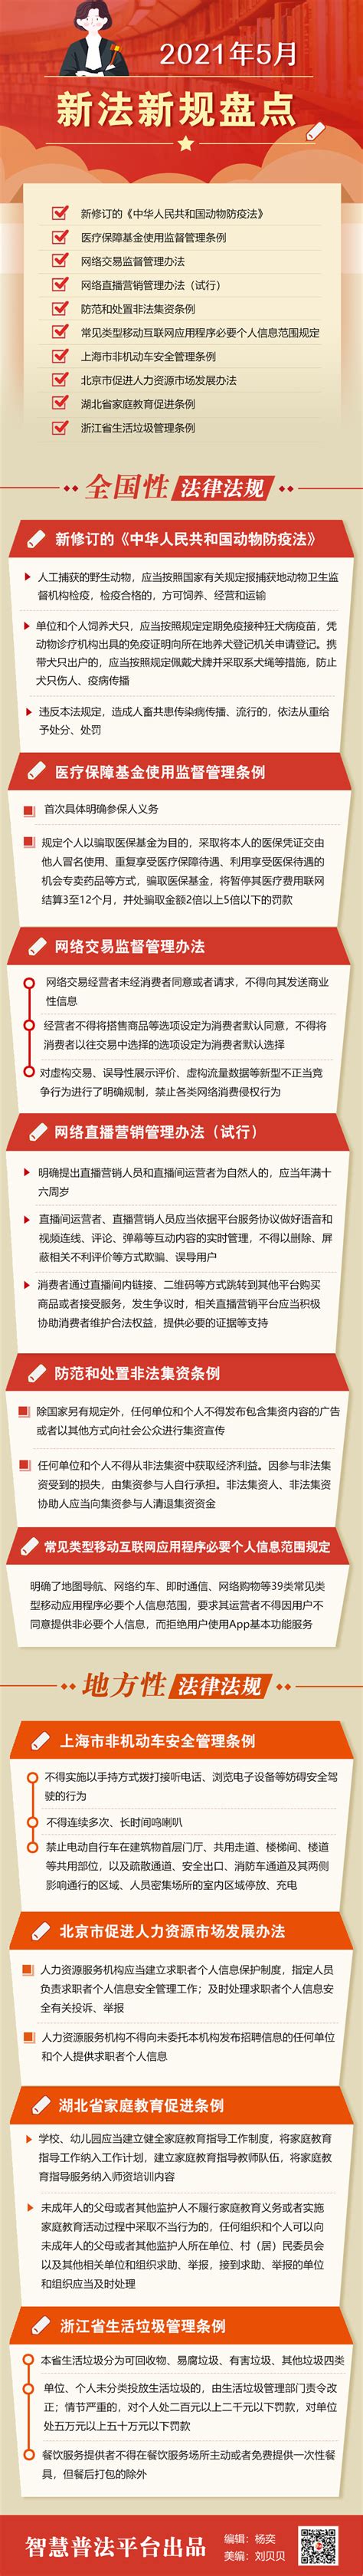 【图说普法】2021年5月新法新规盘点_普法宣传专栏_天津市工业和信息化局